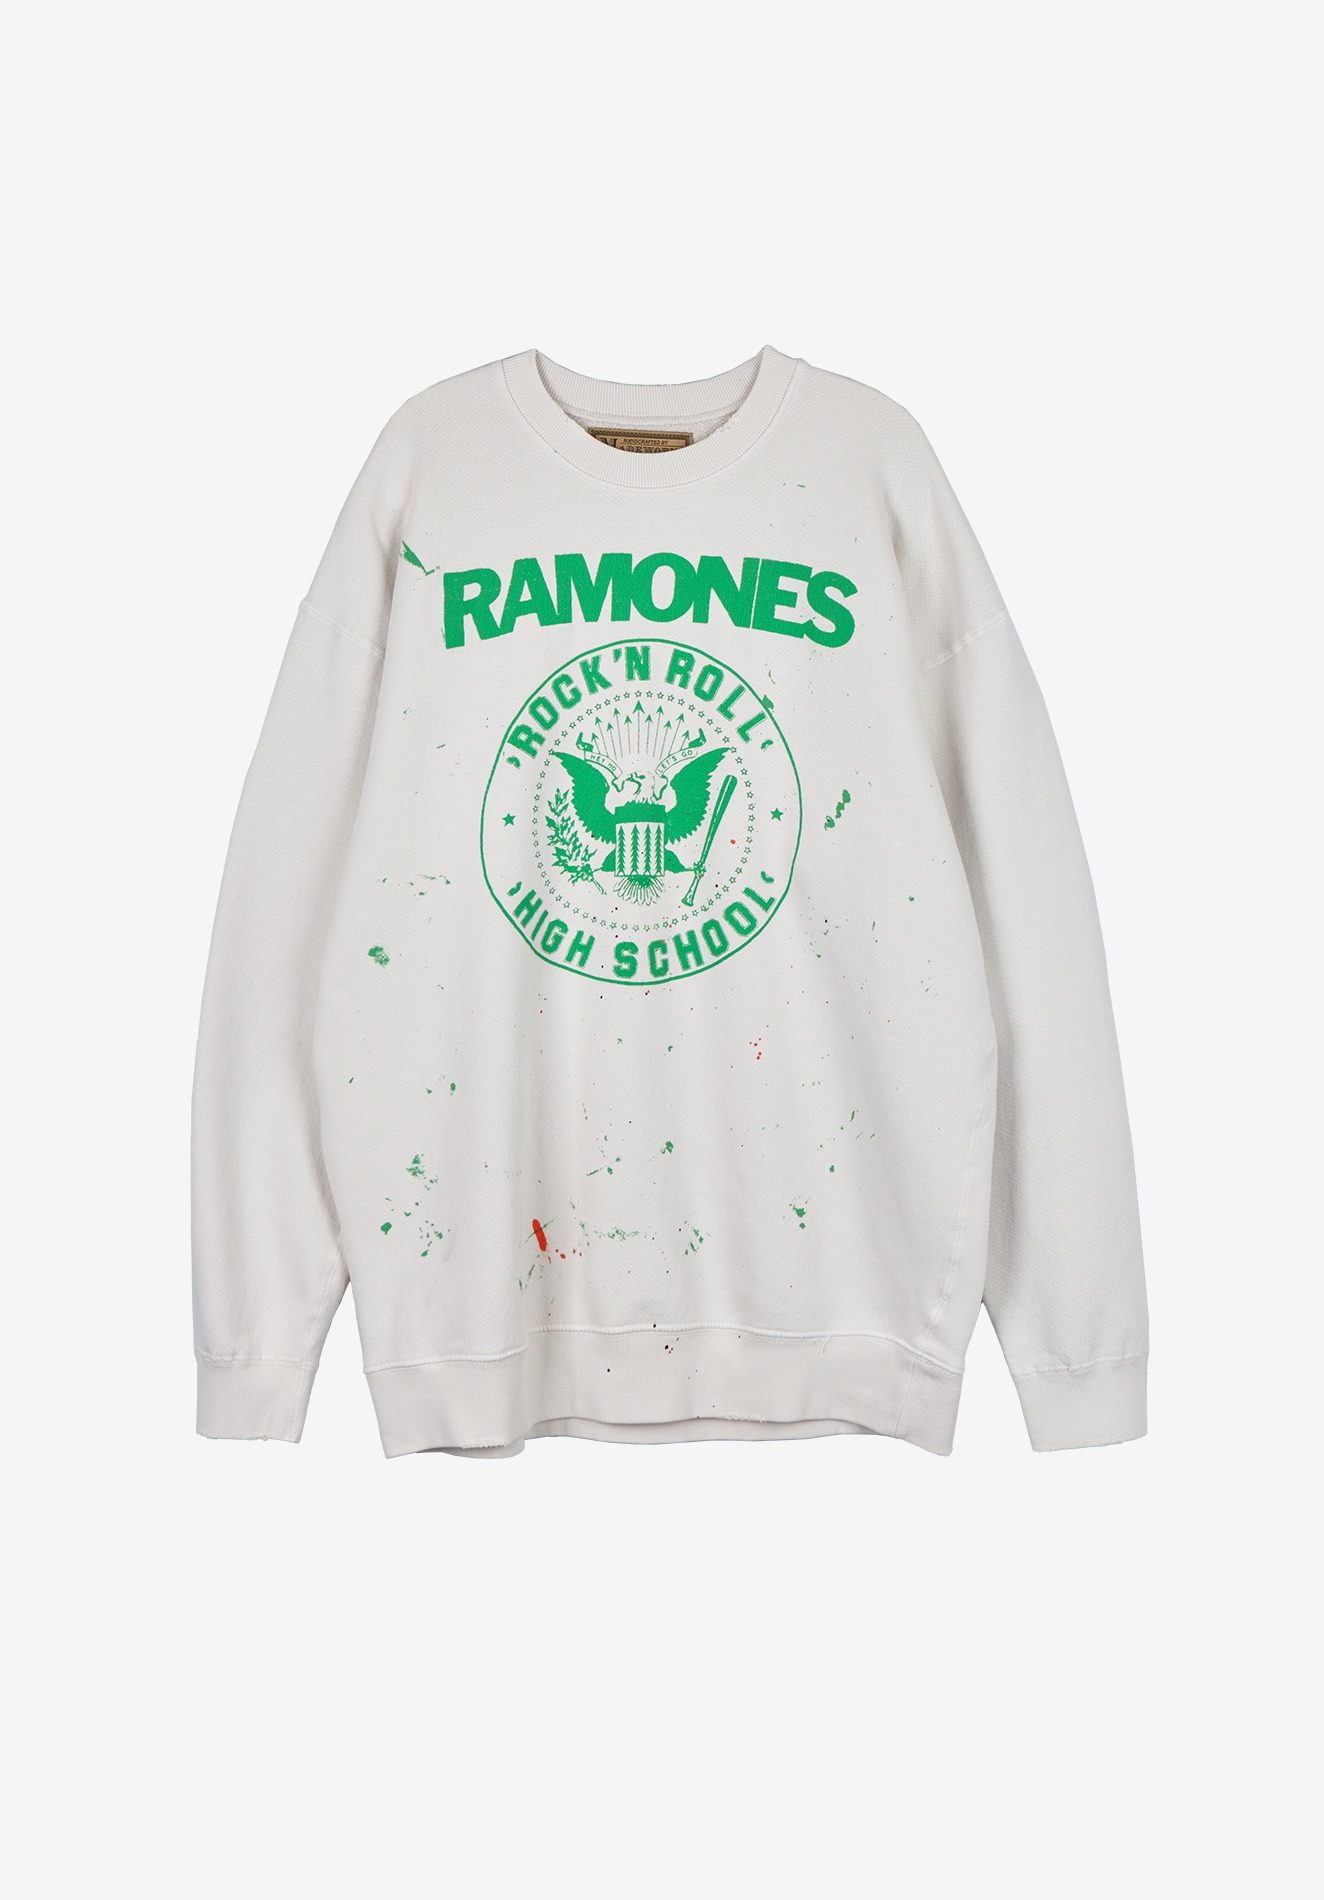 RAMONES SWEAT SHIRT, WHITE